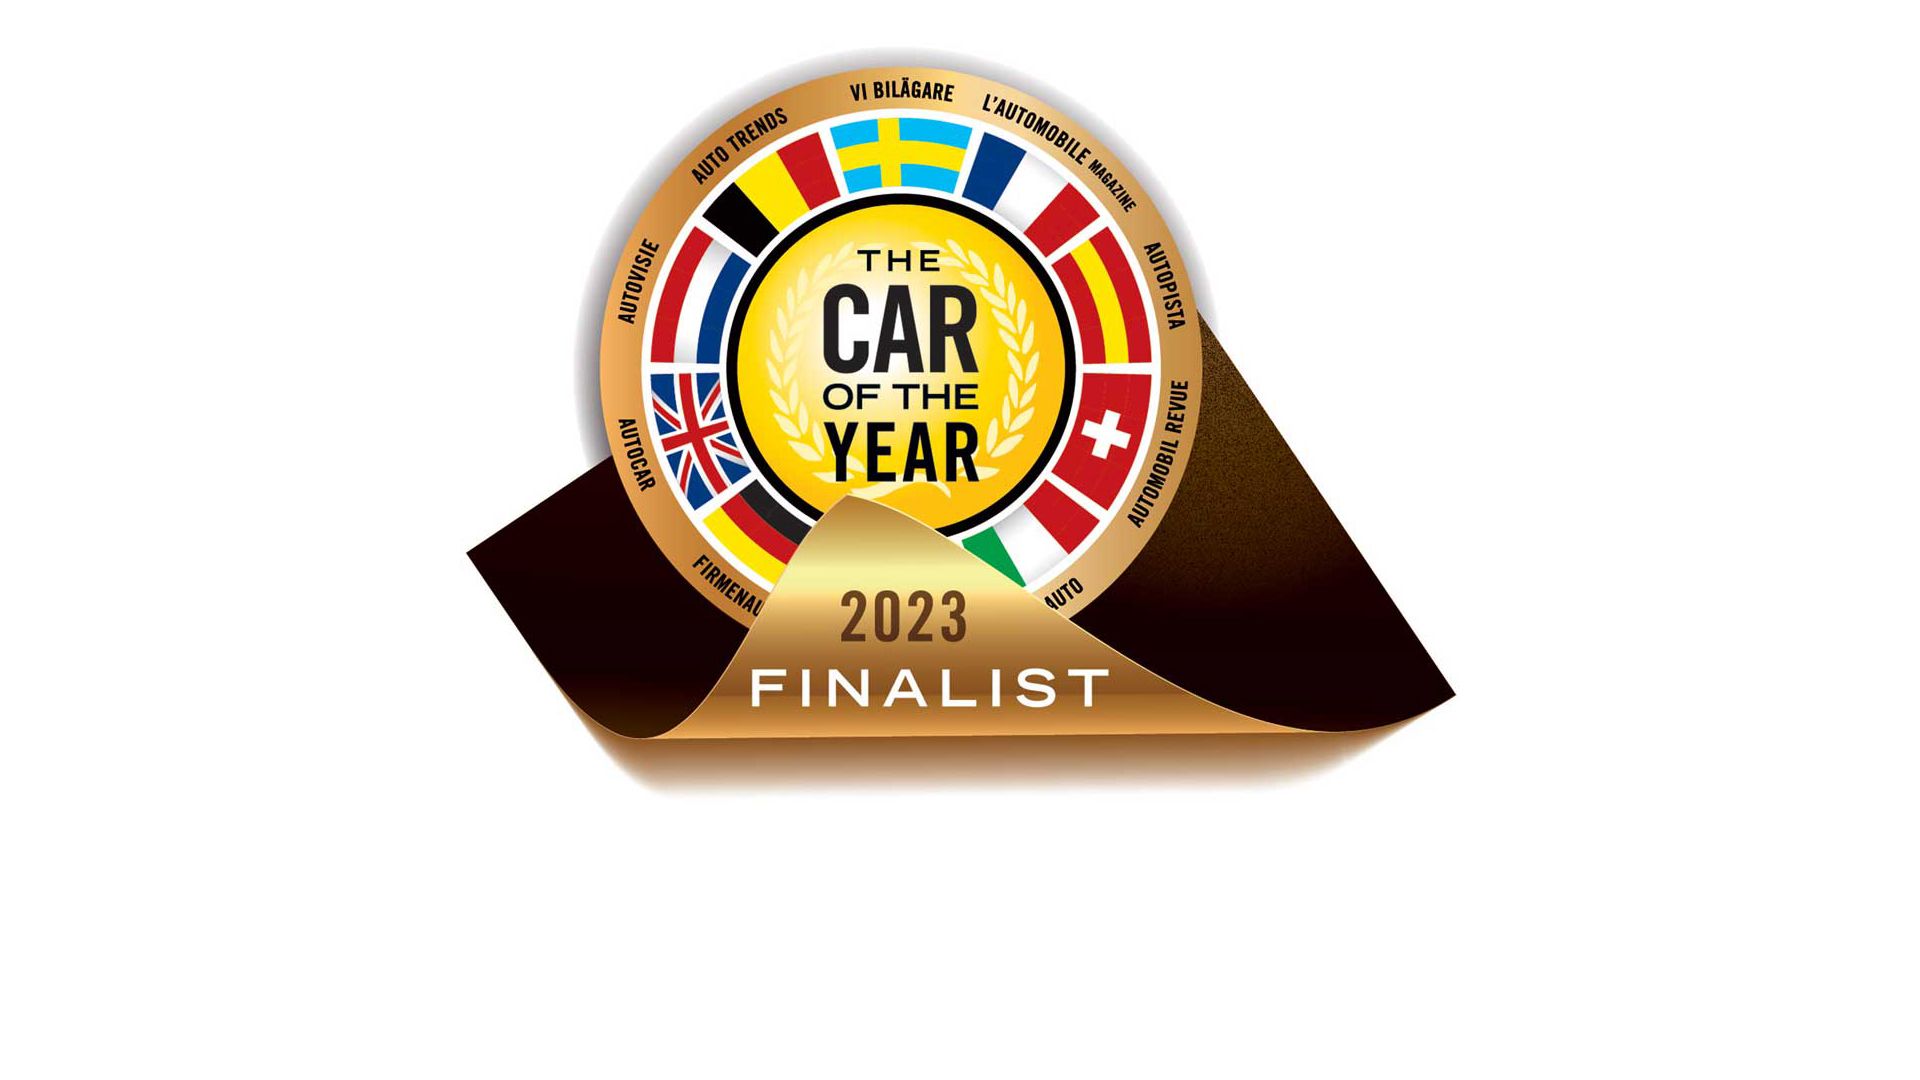 Objavljeno je sedam finalista u izboru za Europski automobil godine 2023.